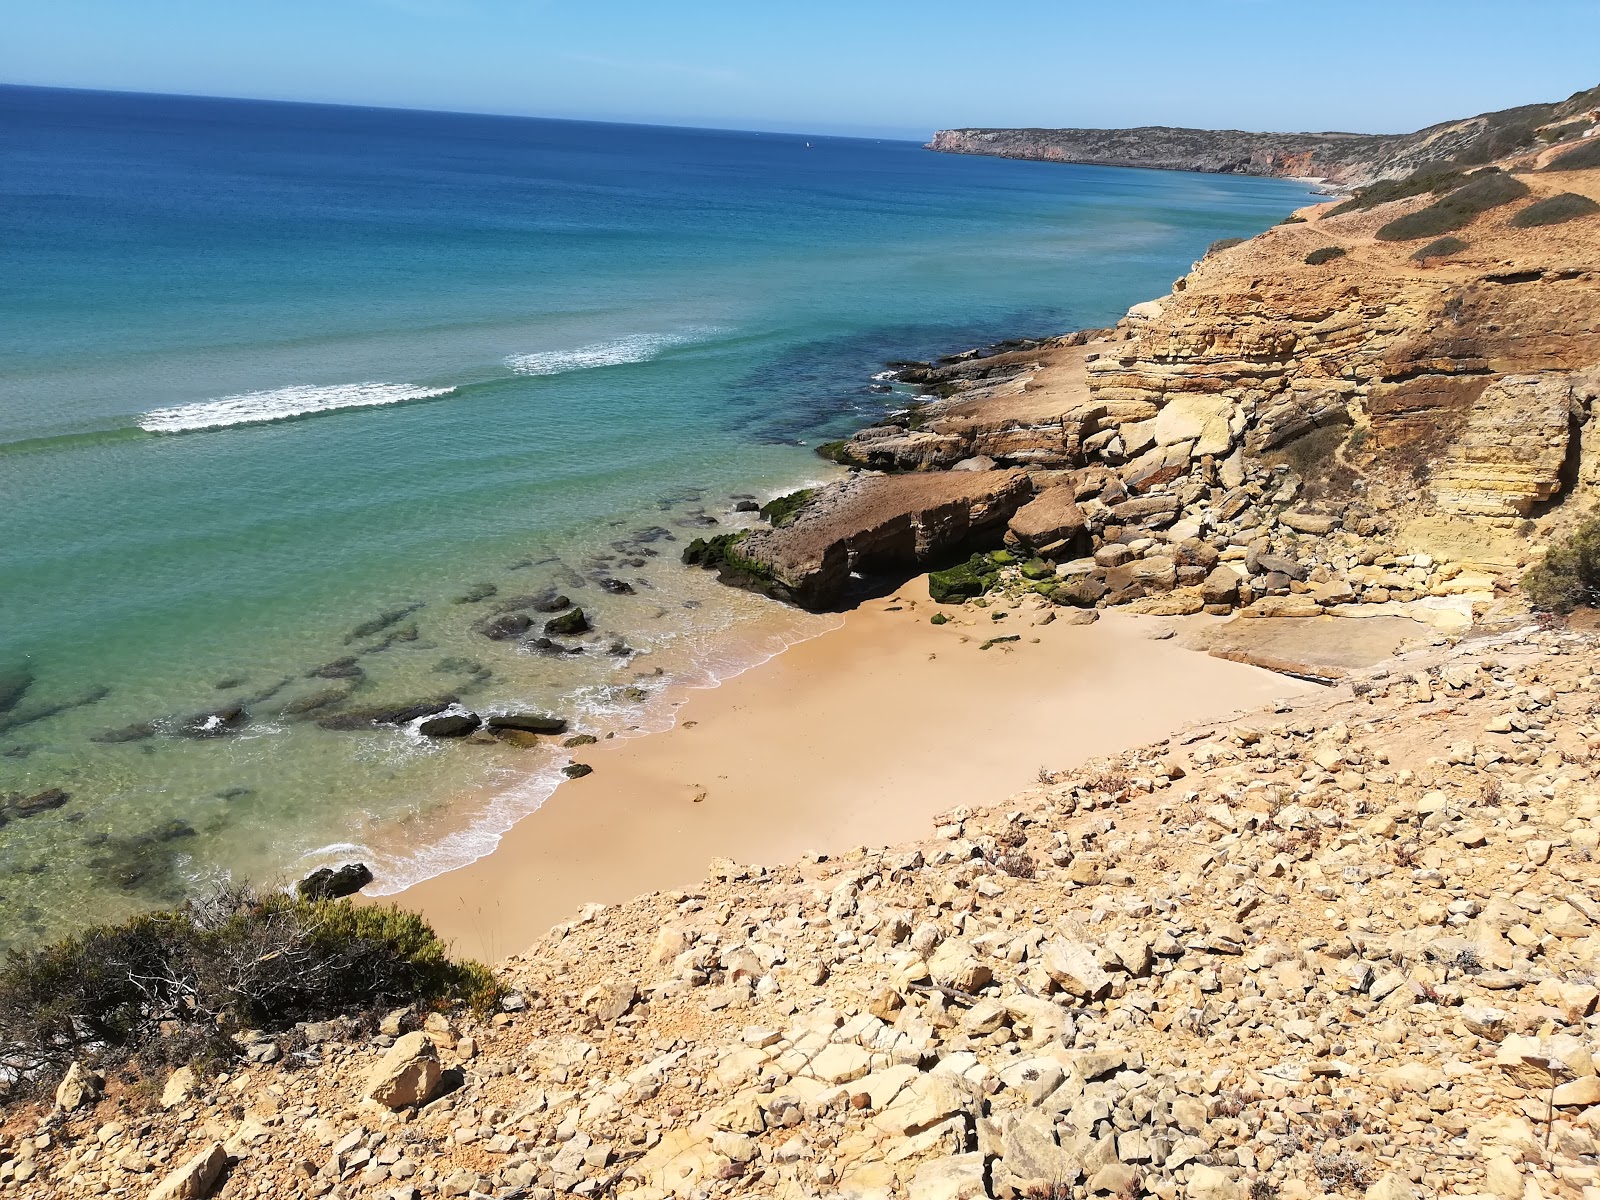 Fotografie cu Praia Santa cu o suprafață de nisip fin strălucitor